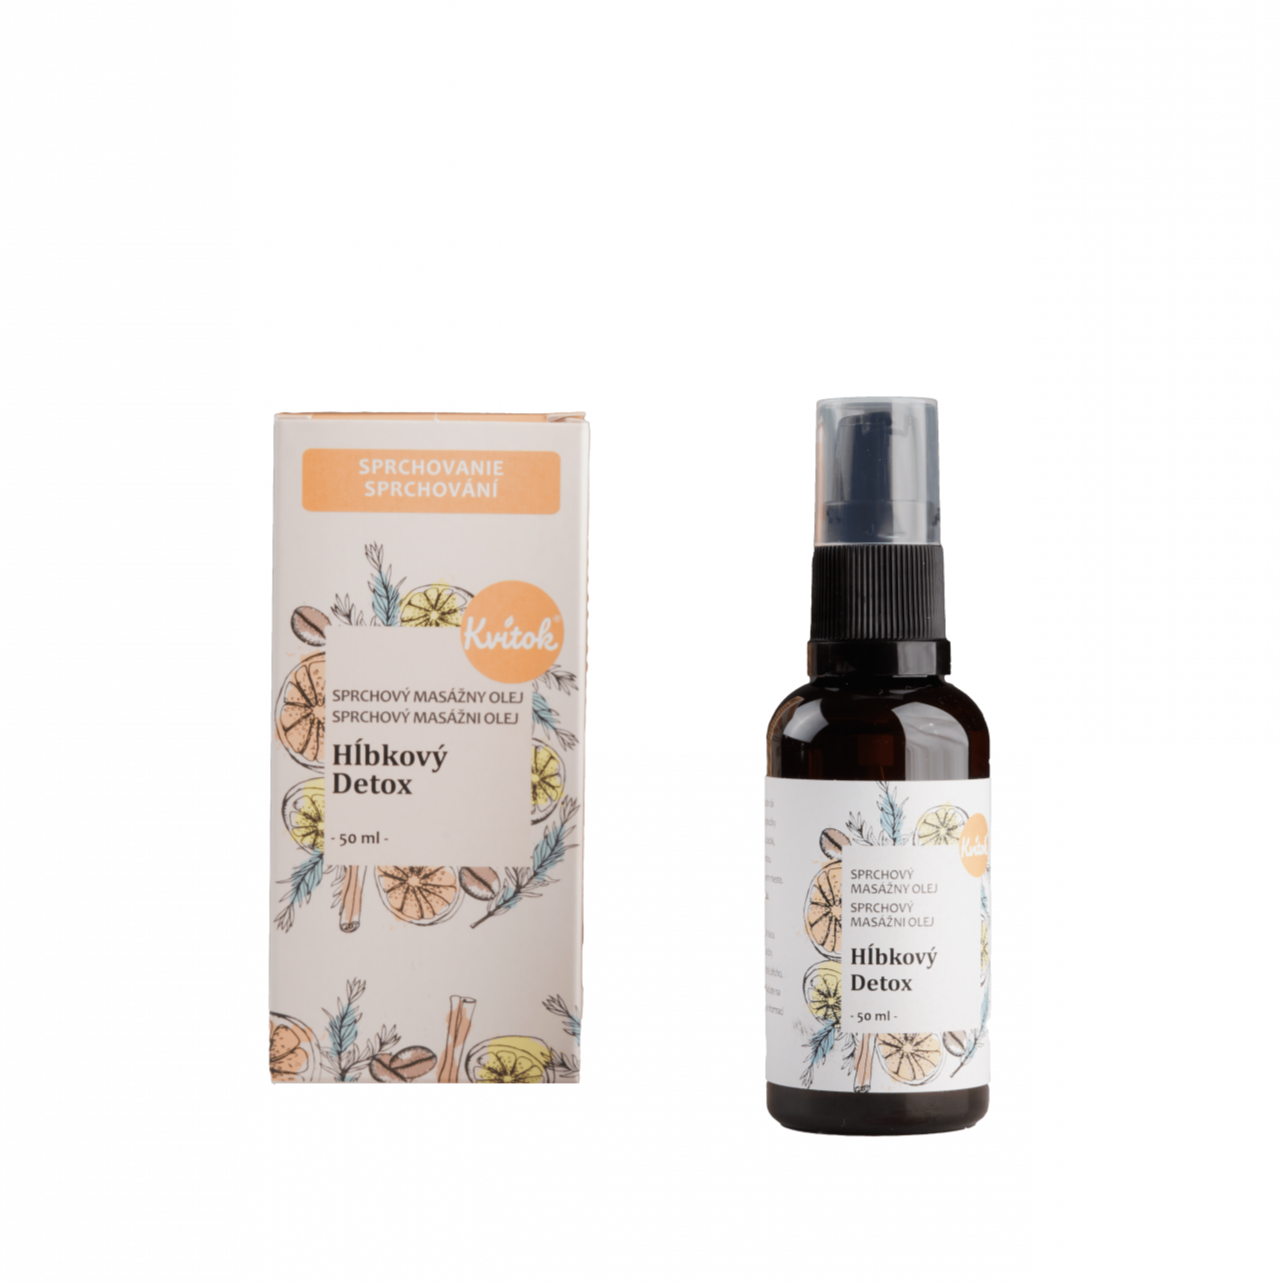 Kvitok Sprchový masážní olej proti celulitidě Hloubkový detox (50 ml) - II. jakost